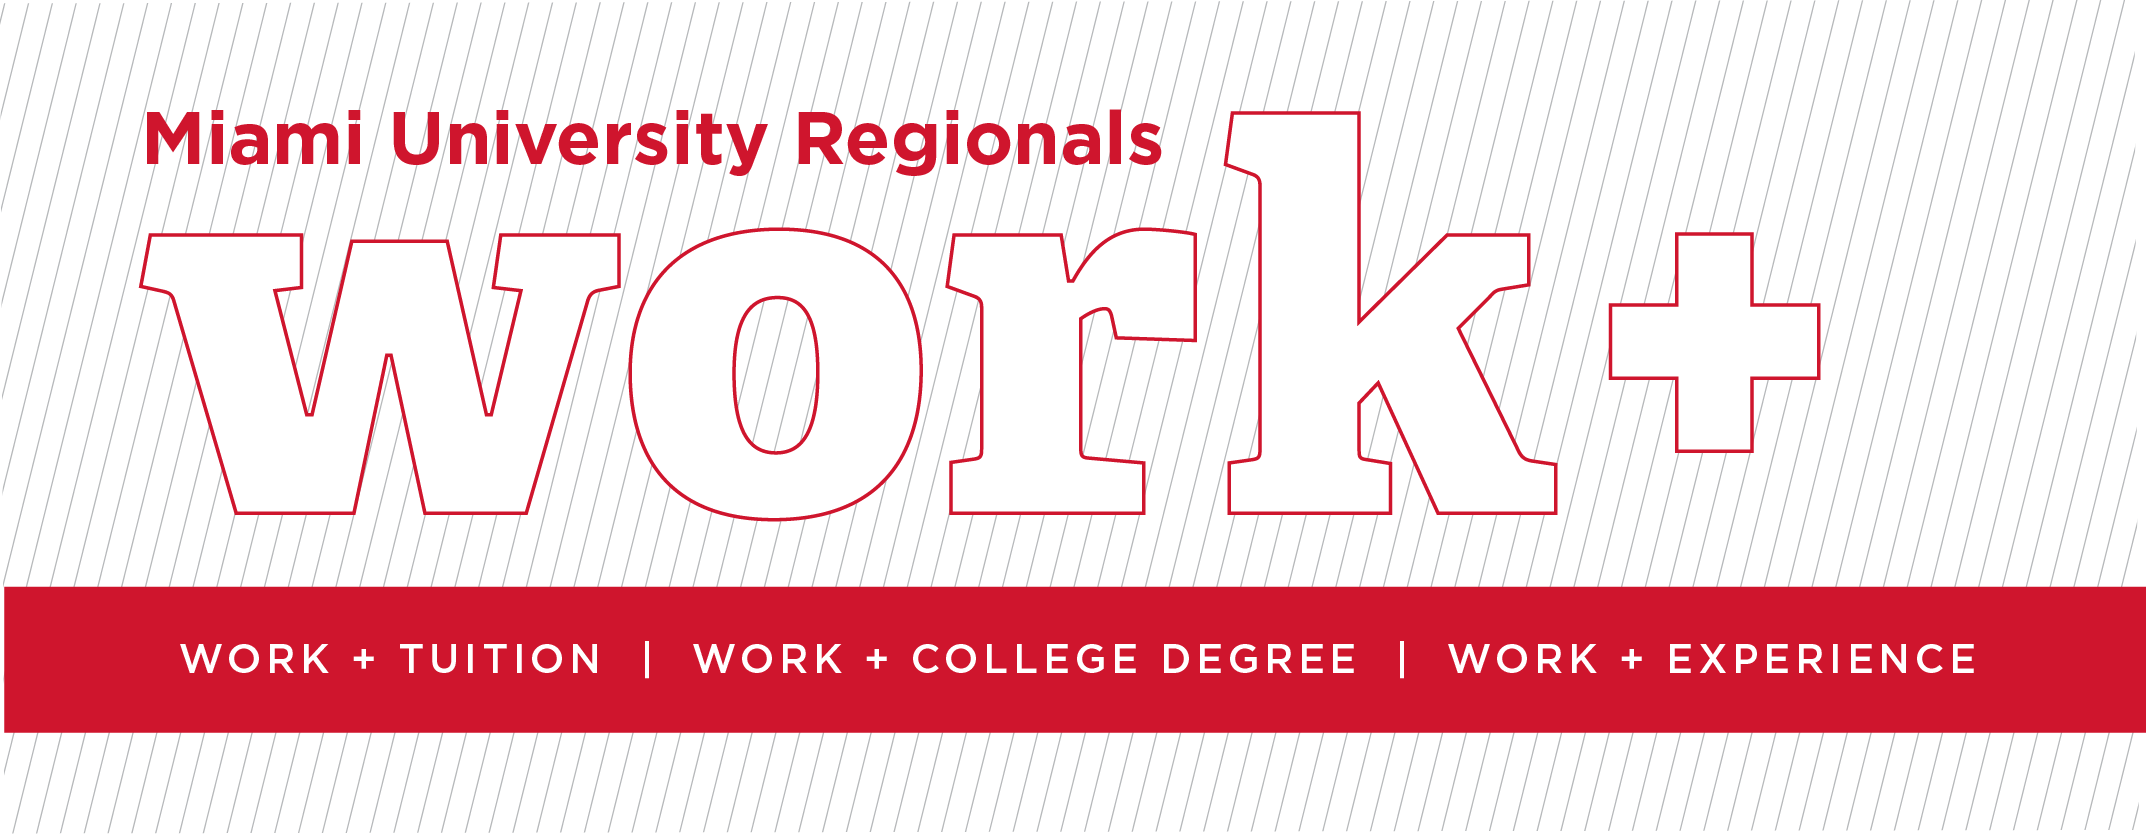 Miami University Regionals Work+ Work + Tuition | Work + College Degree | Work + Experience